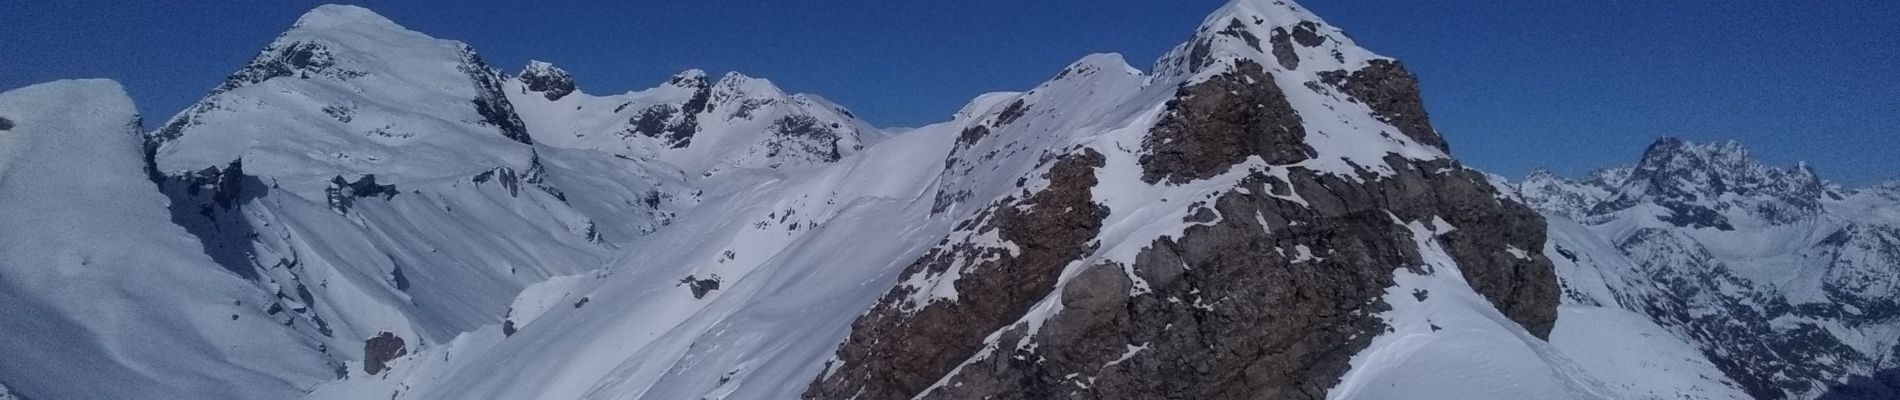 Randonnée Ski de randonnée Saint-Jean-Saint-Nicolas - Soleil boeuf et petite remontée à Prouveyrat - Photo